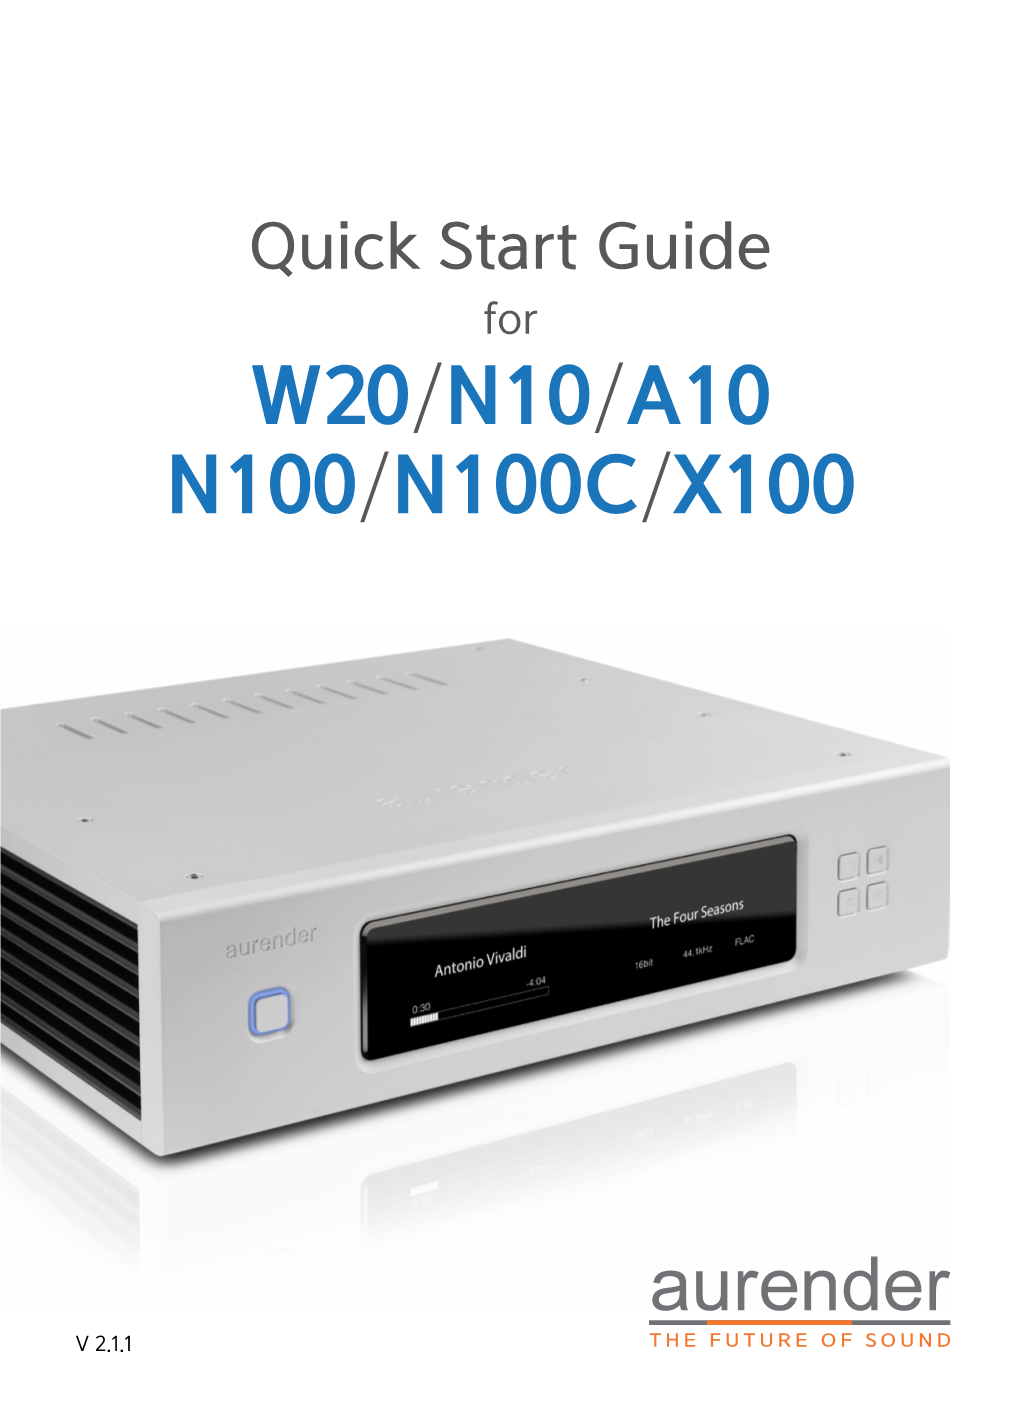 W20/N10/A10 N100/N100c/X100